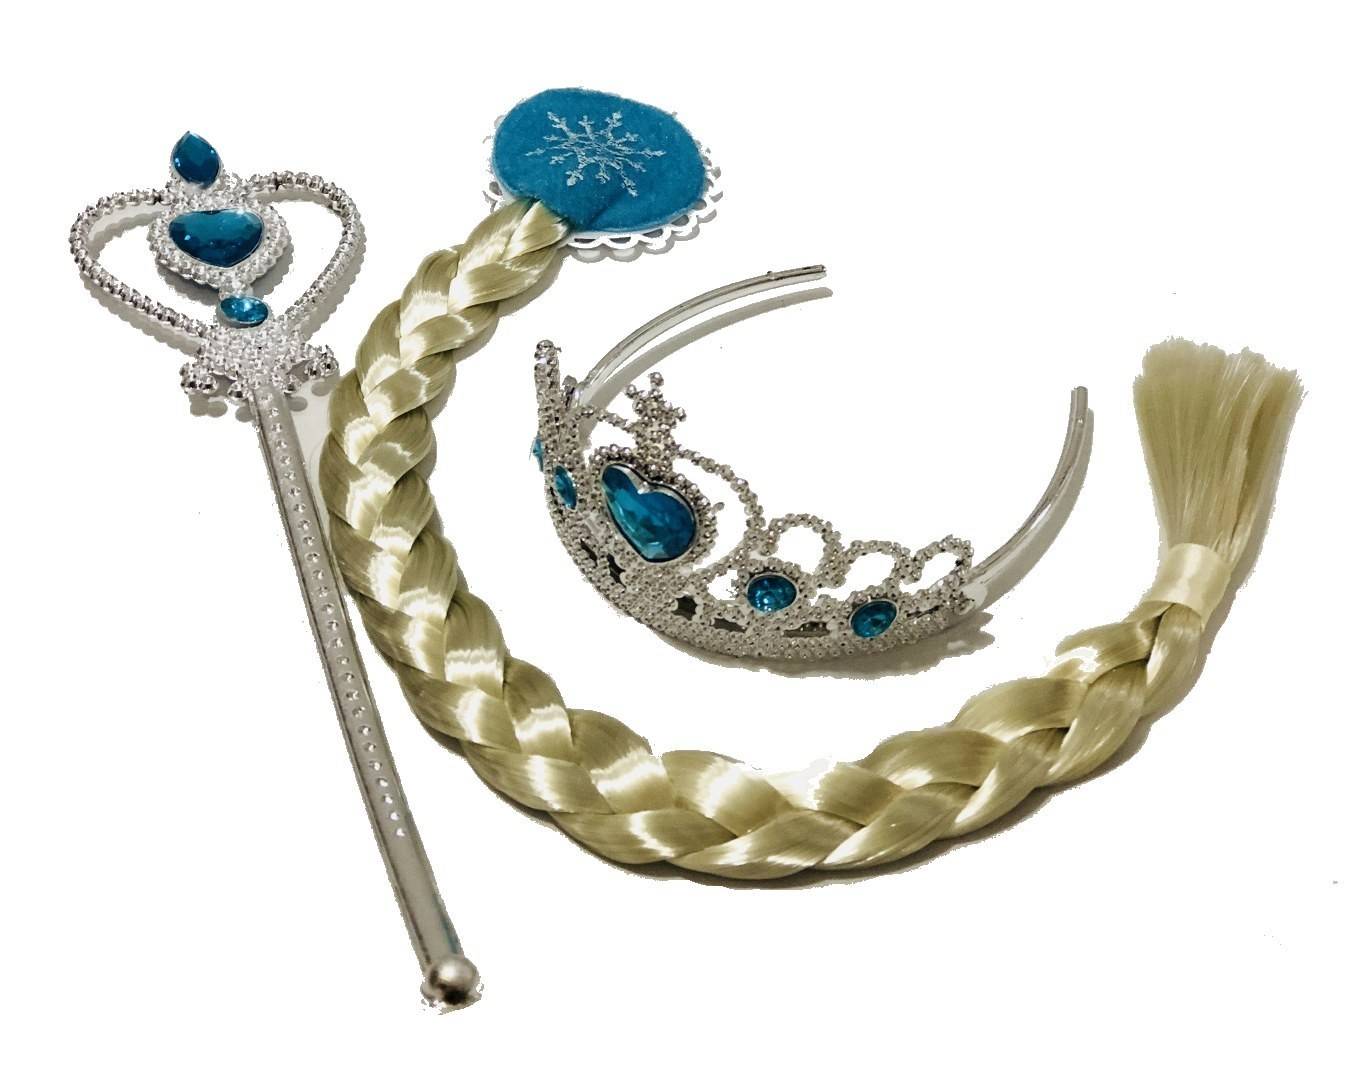 accesorii pentru printesa Elsa, coada cu clema, coronita, bagheta